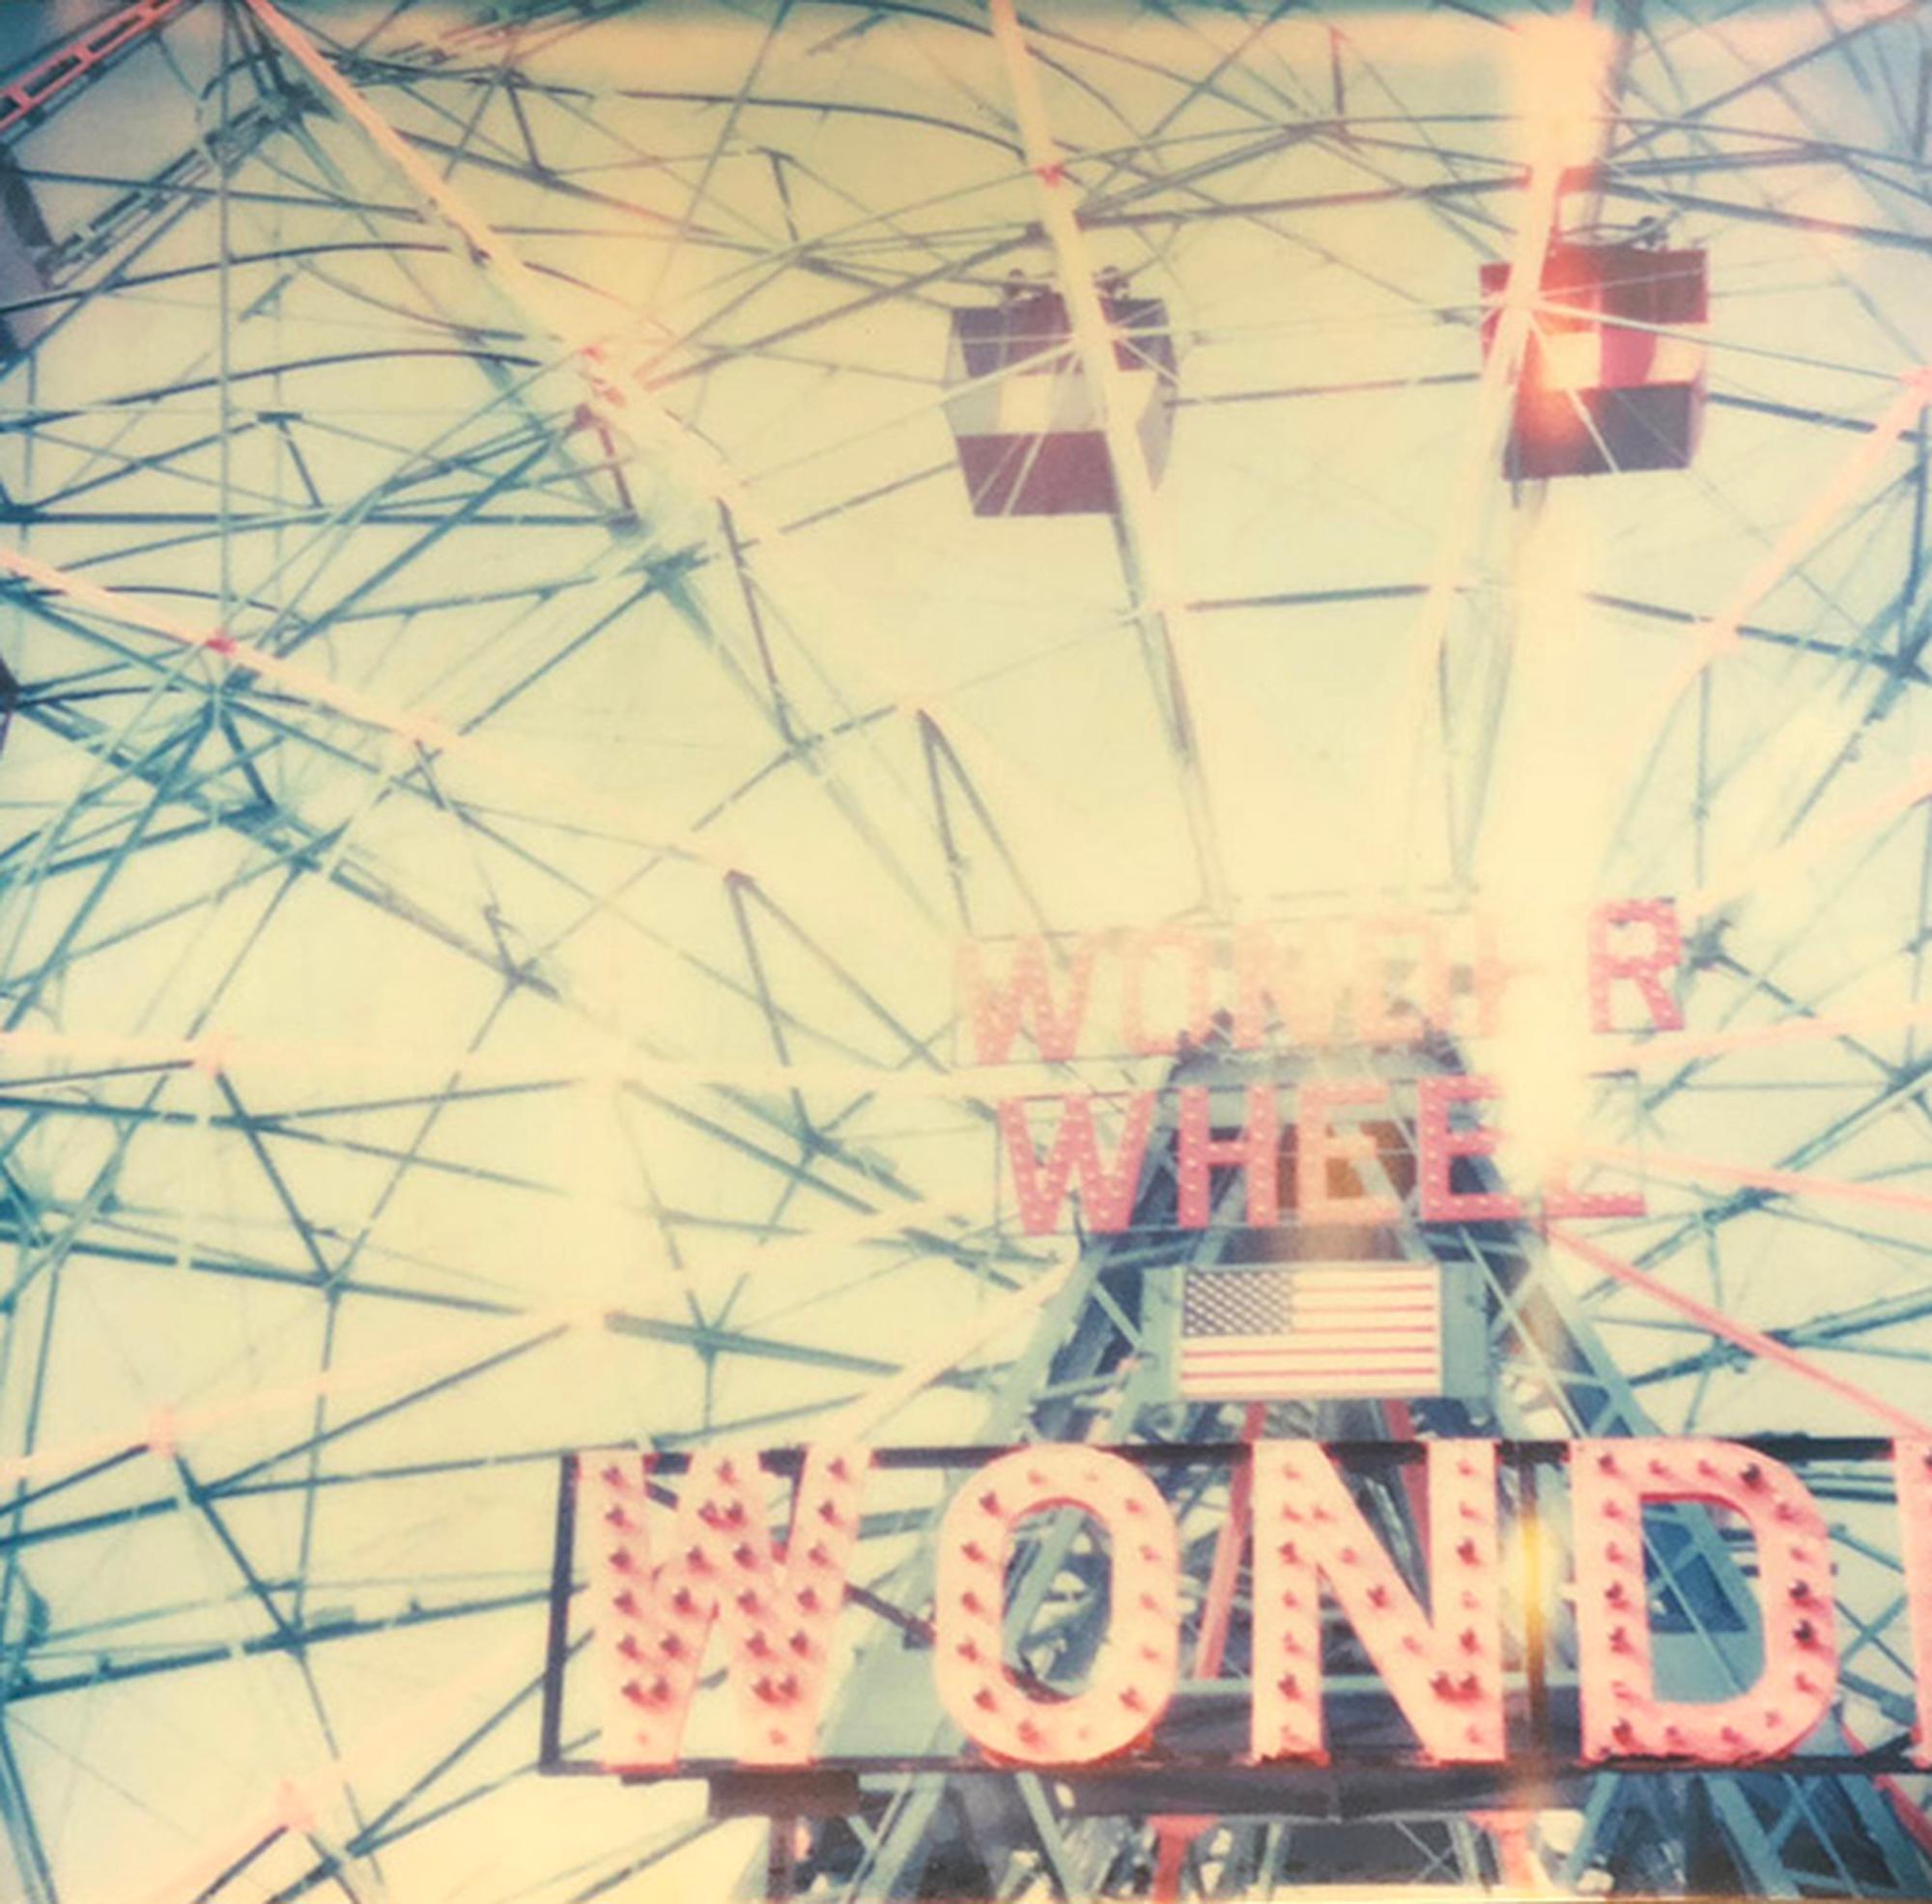 Wonder Wheel - Contemporain, abstrait, paysage, Polaroid, expiré, 21e - Photograph de Stefanie Schneider